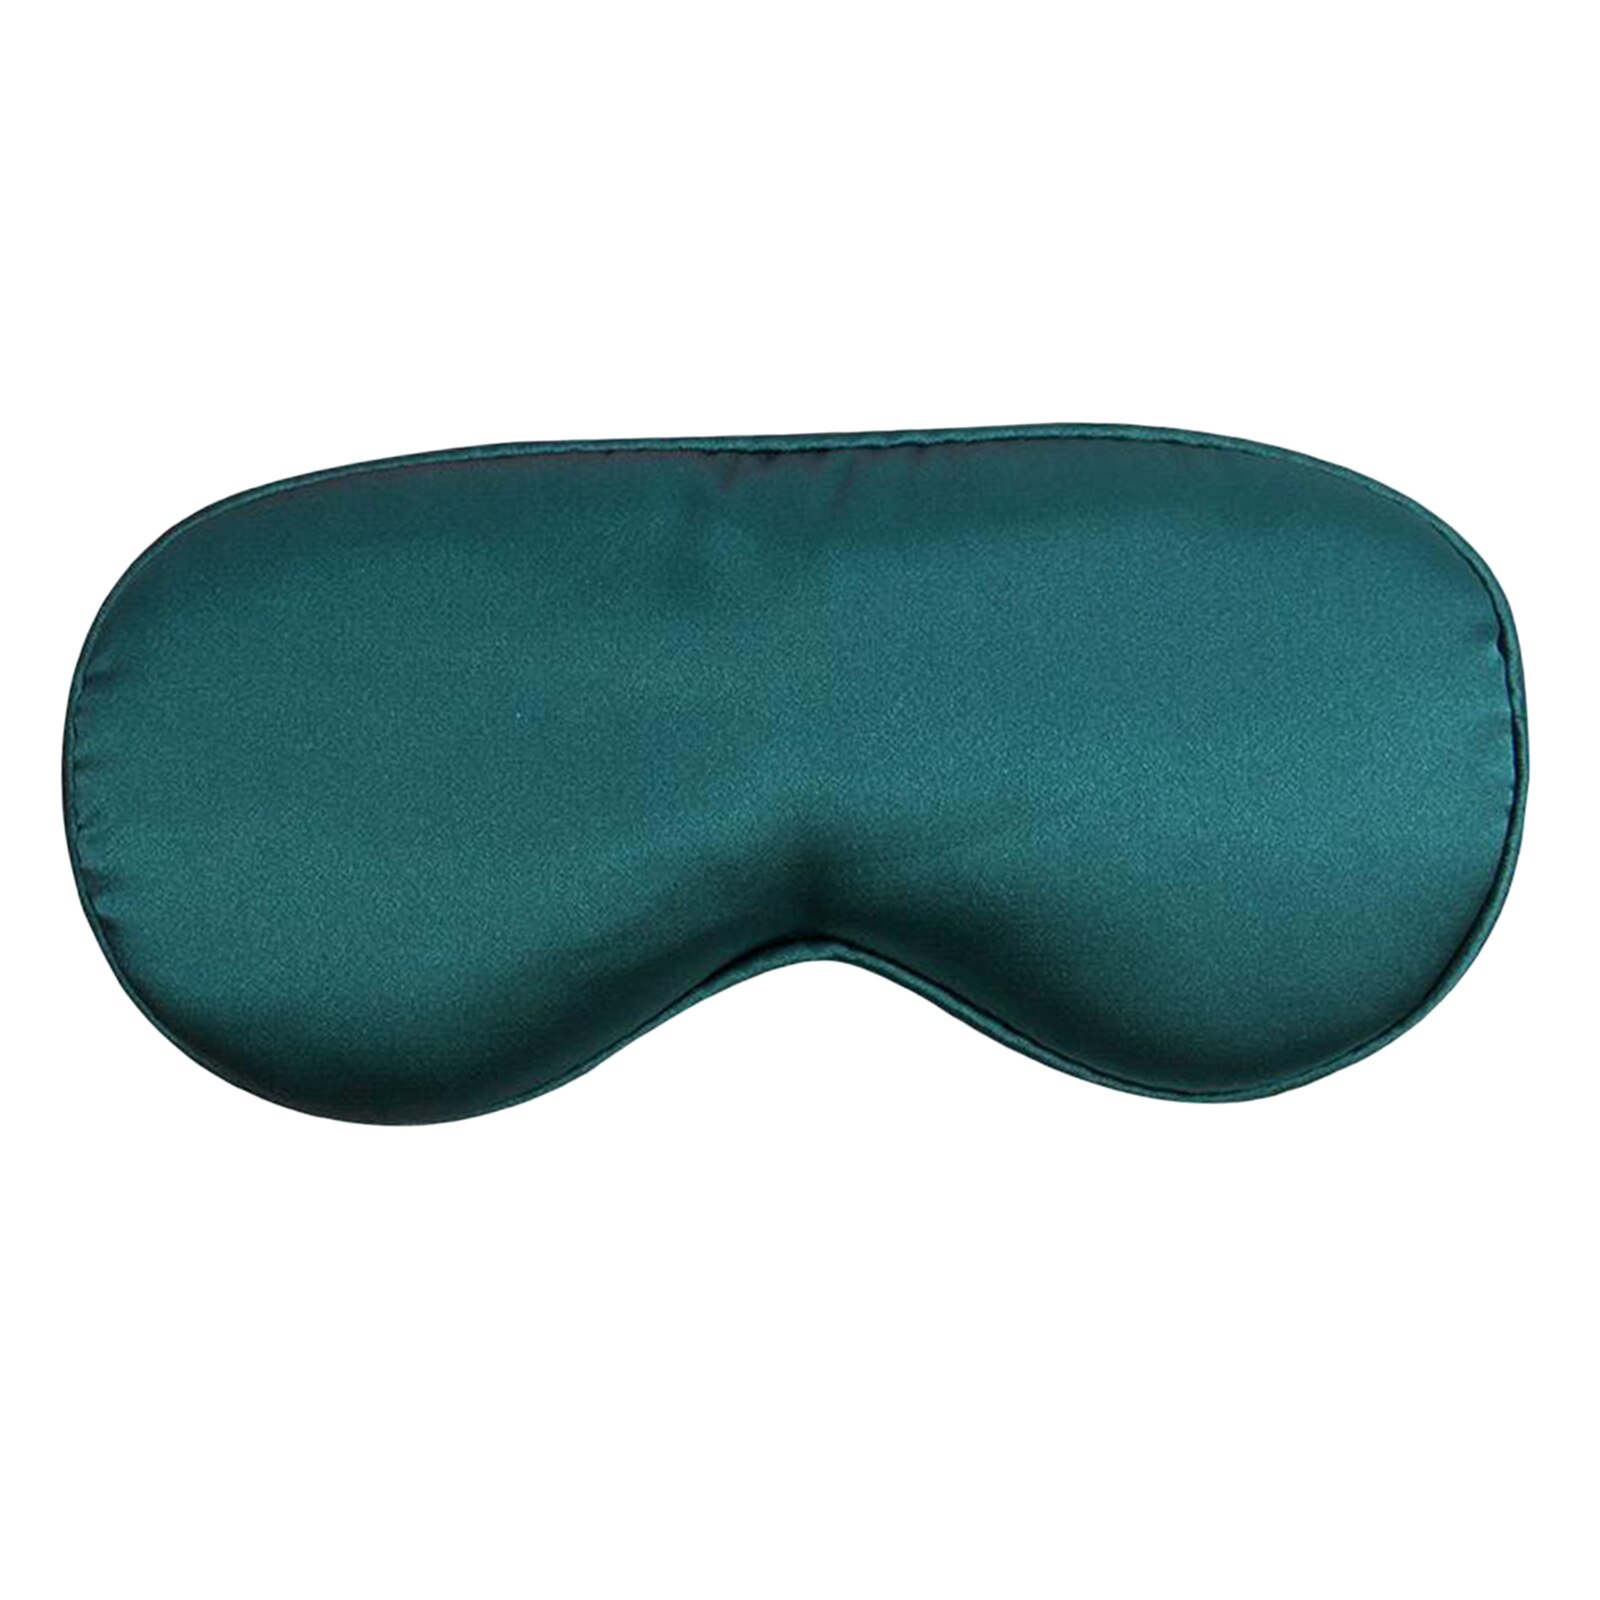 Usb Verwarmde Zijden Oogmasker Moxa Verwarming Verlichten Donkere Kringen Double-Side Shading Slaapmasker Slapen Eye Mask Cover: Green